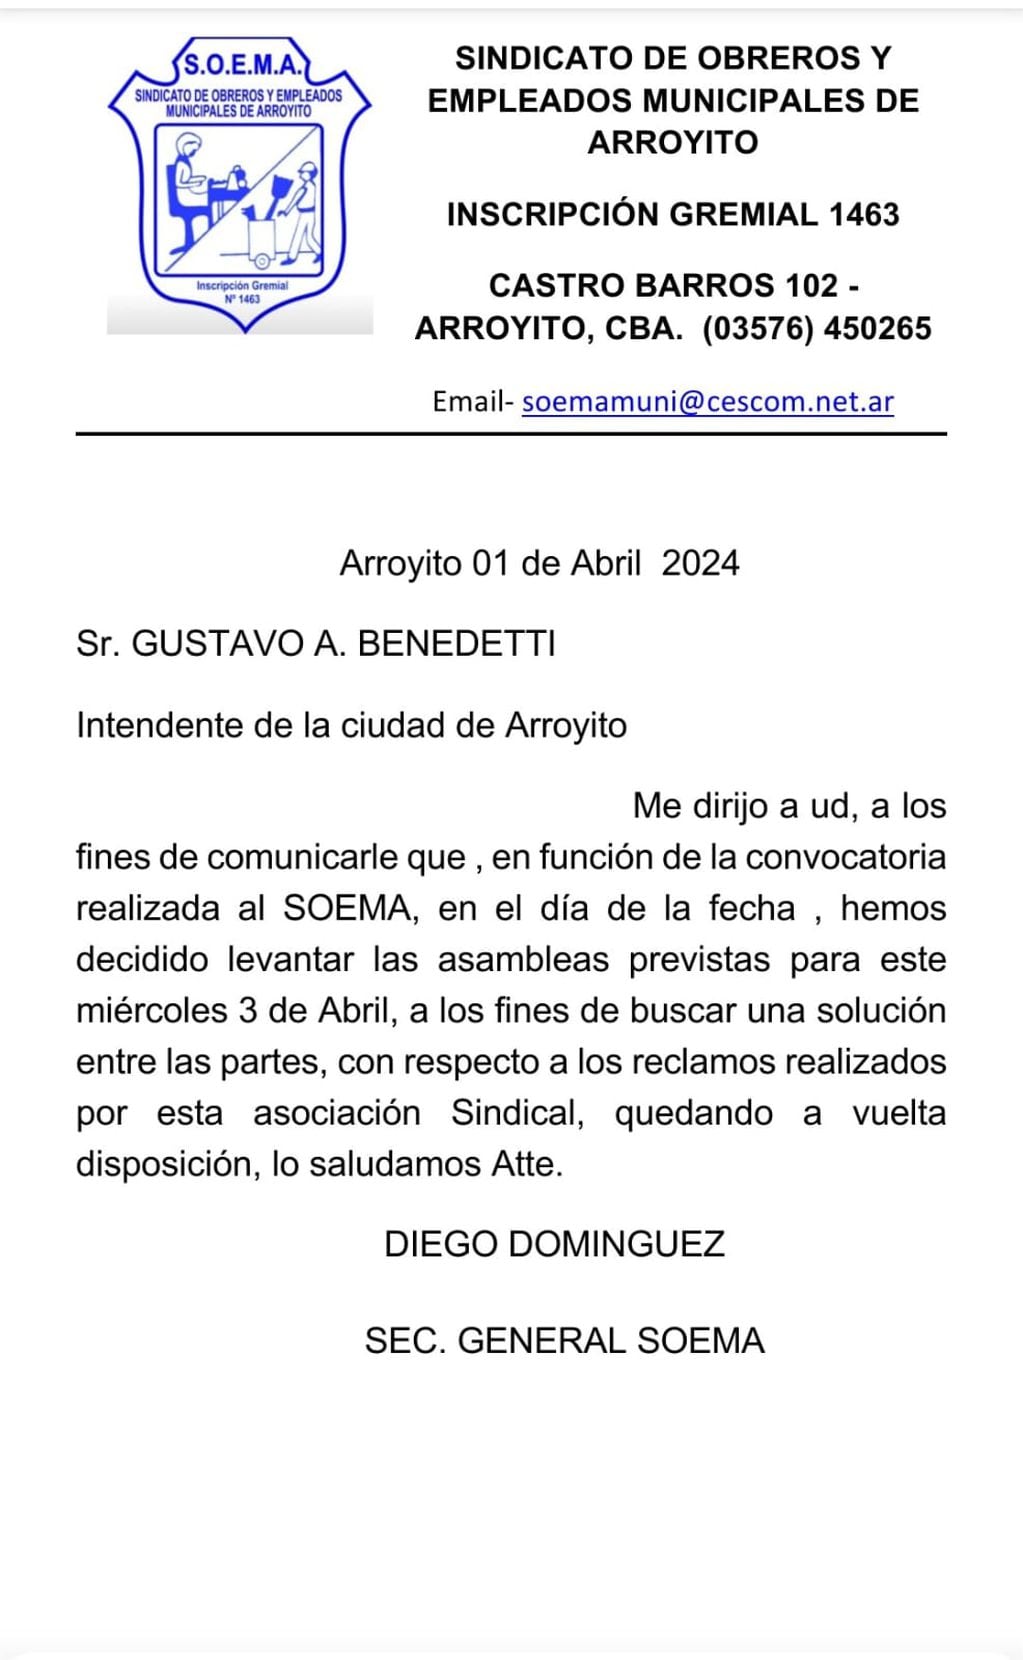 Carta enviada por el SOEMA al Municipio de Arroyito